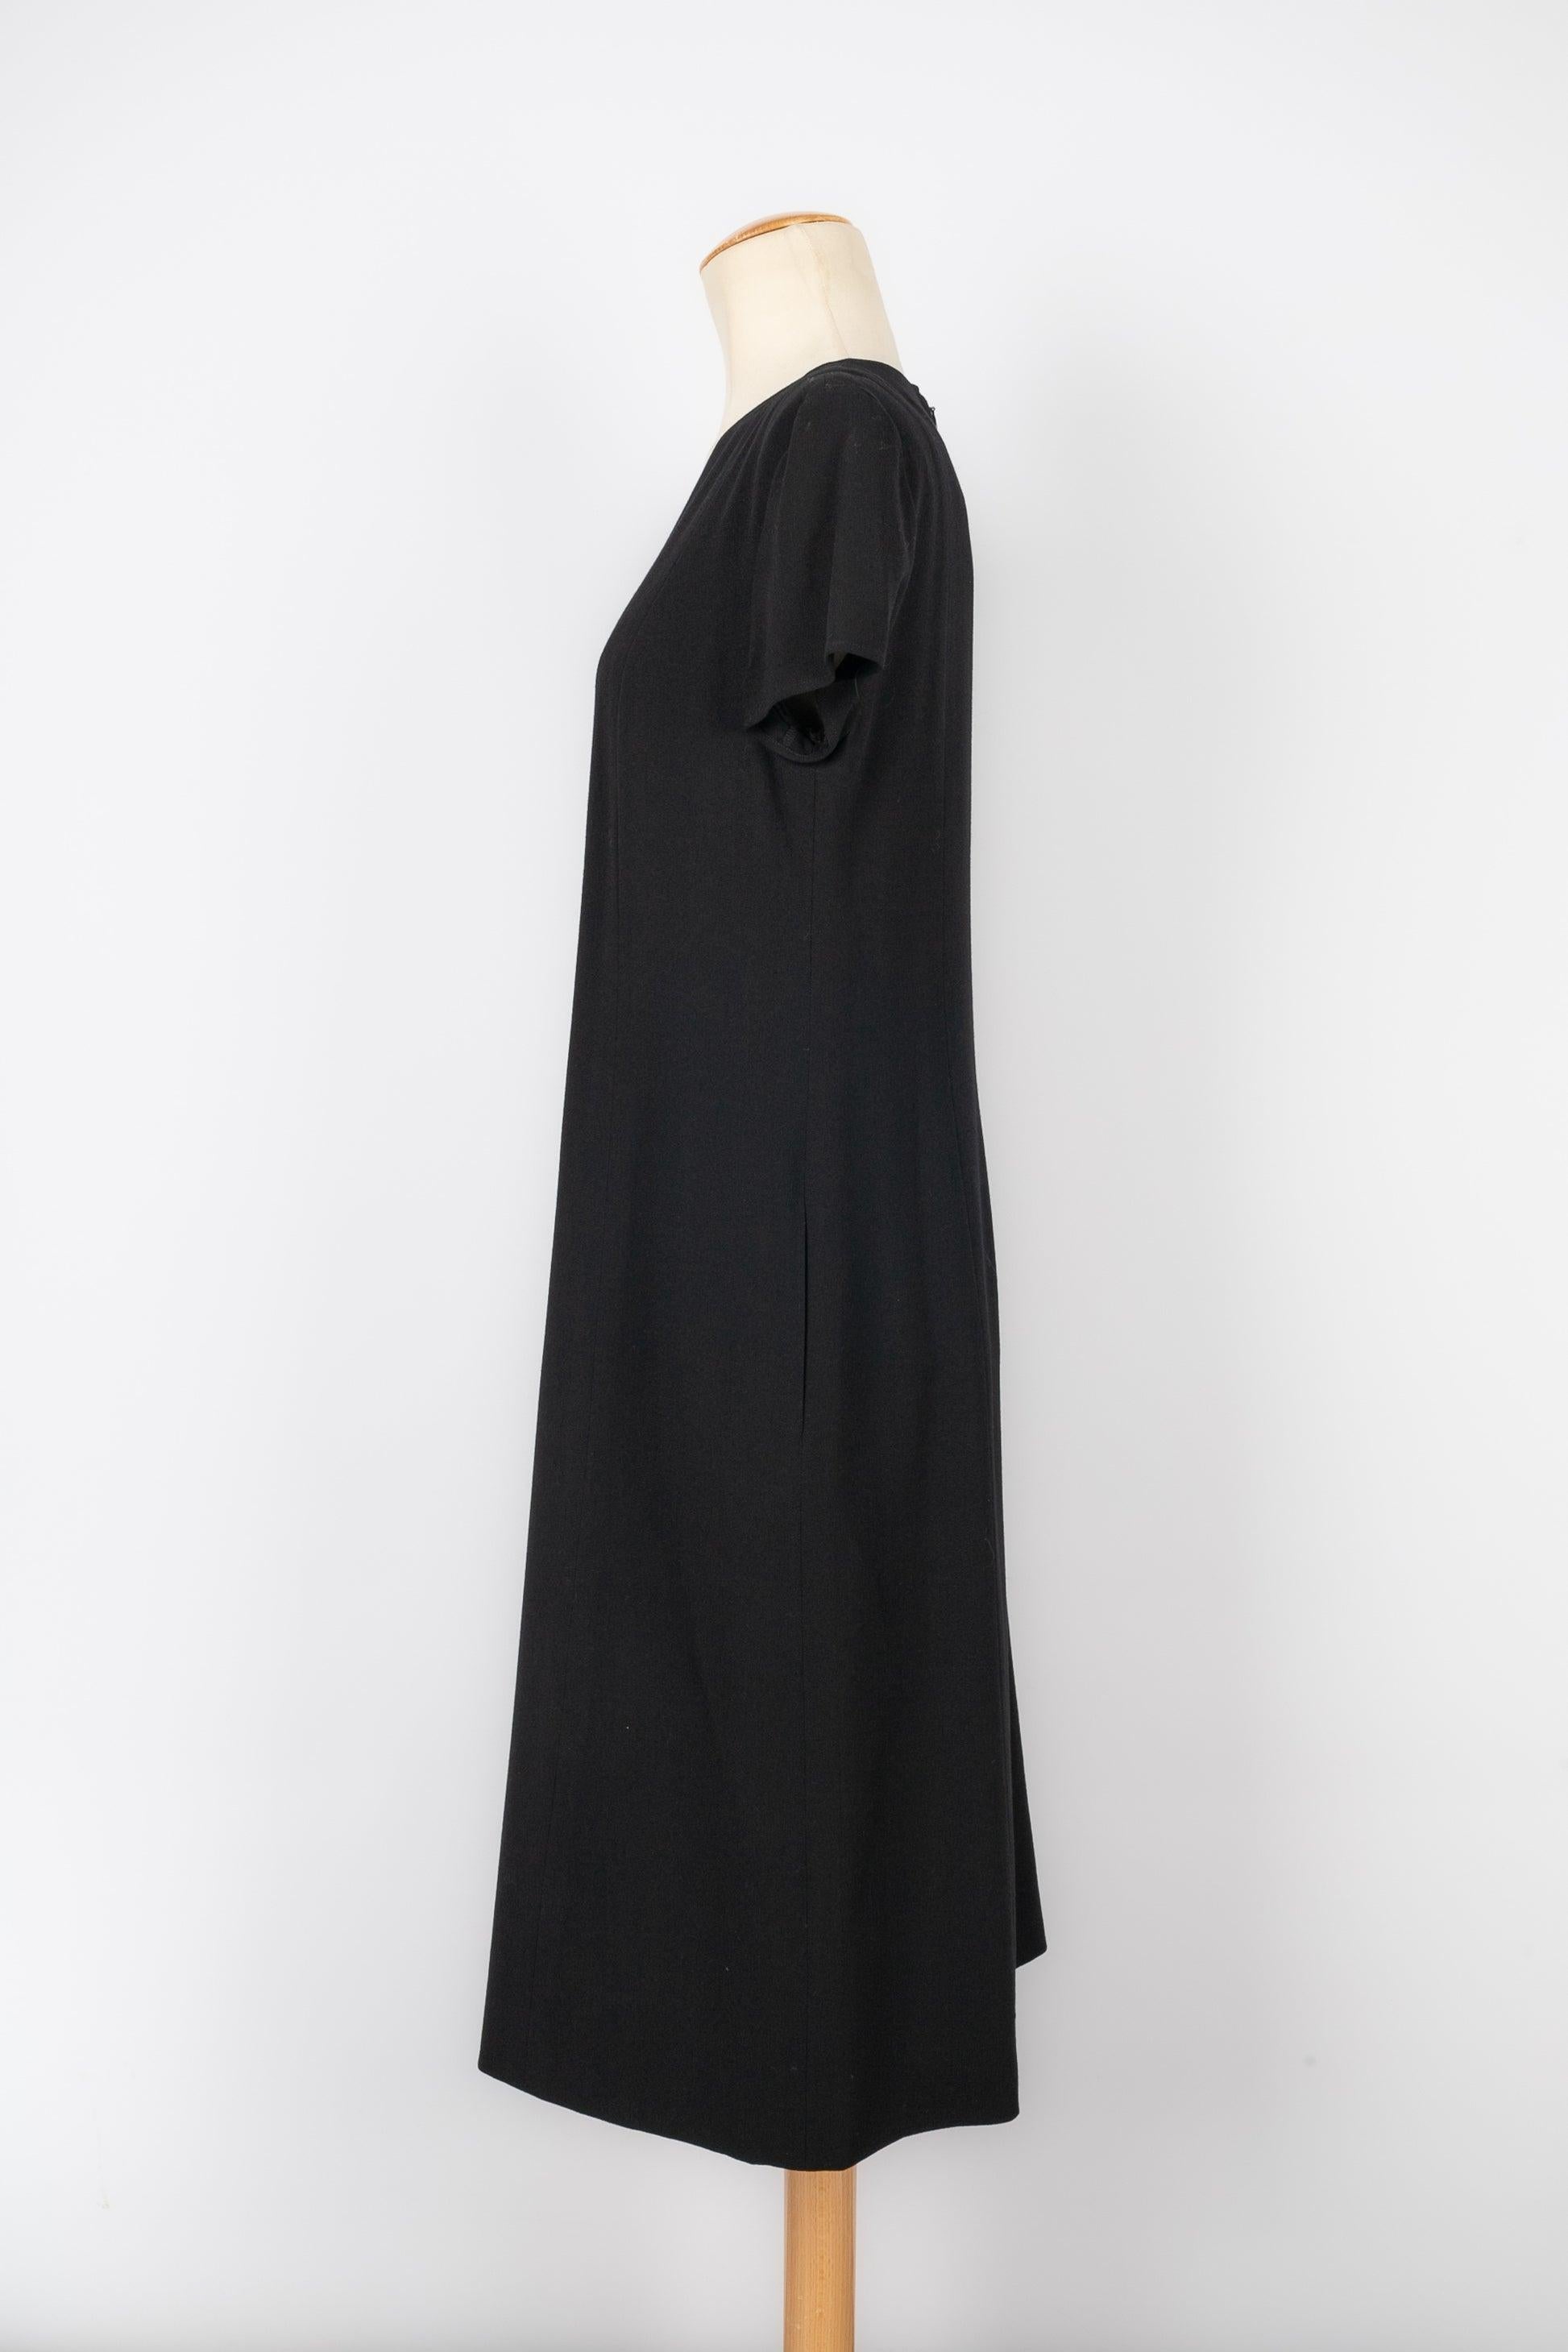 Chanel - (Made in France) Schwarzes Kleid aus Wollgemisch. Größe 42FR angegeben.

Zusätzliche Informationen:
Zustand: Sehr guter Zustand
Abmessungen: Schulterbreite: 42 cm - Brustumfang: 48 cm - Länge: 104 cm

Sellers Referenz: VR58